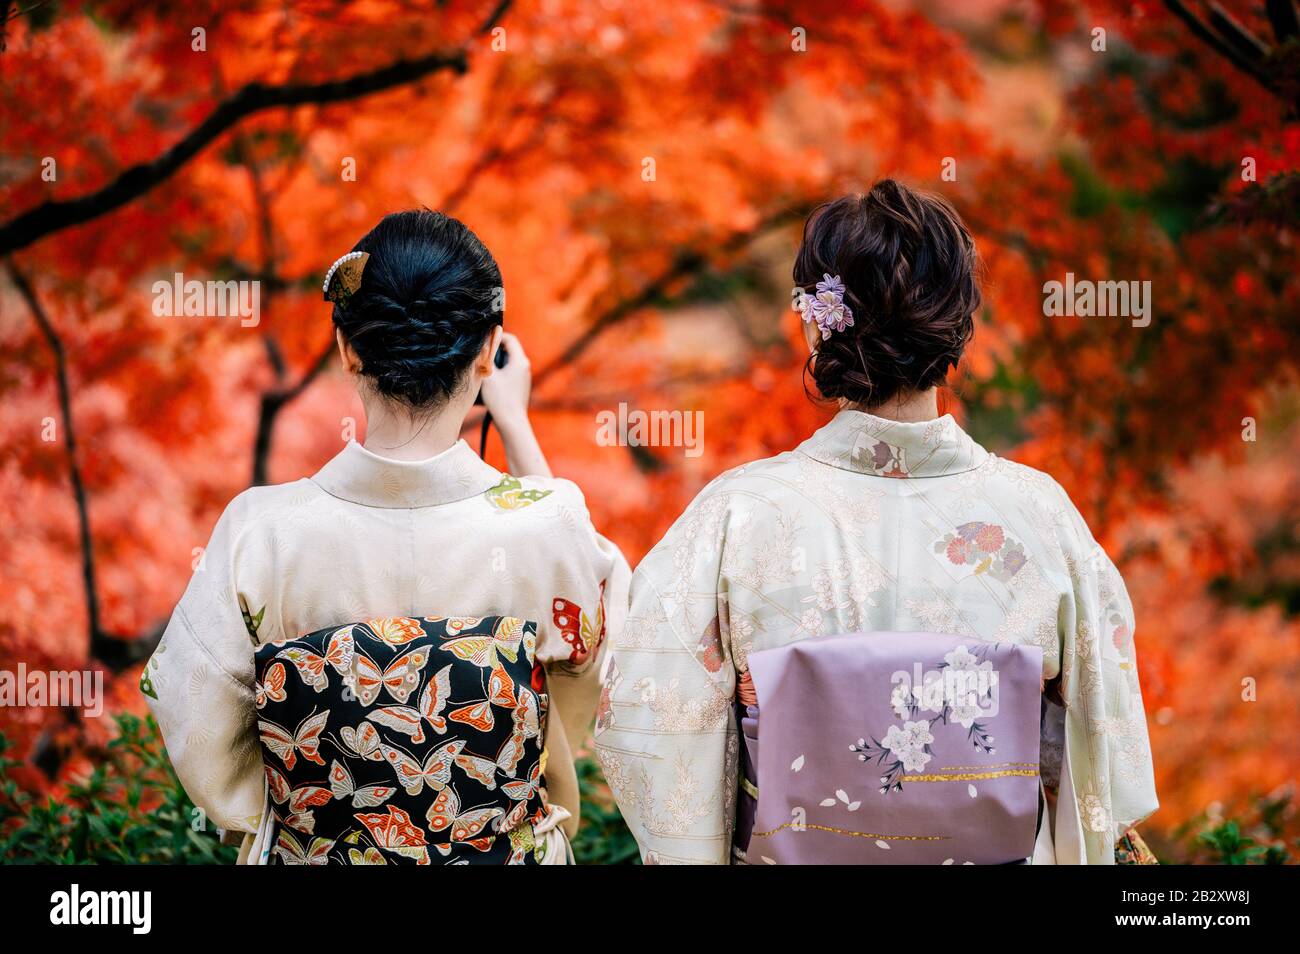 Las mujeres jóvenes que visten el tradicional kimono japonés con coloridos árboles de arce en otoño son famosas en hojas de color otoñal y flores de cerezo en primavera, Ky Foto de stock